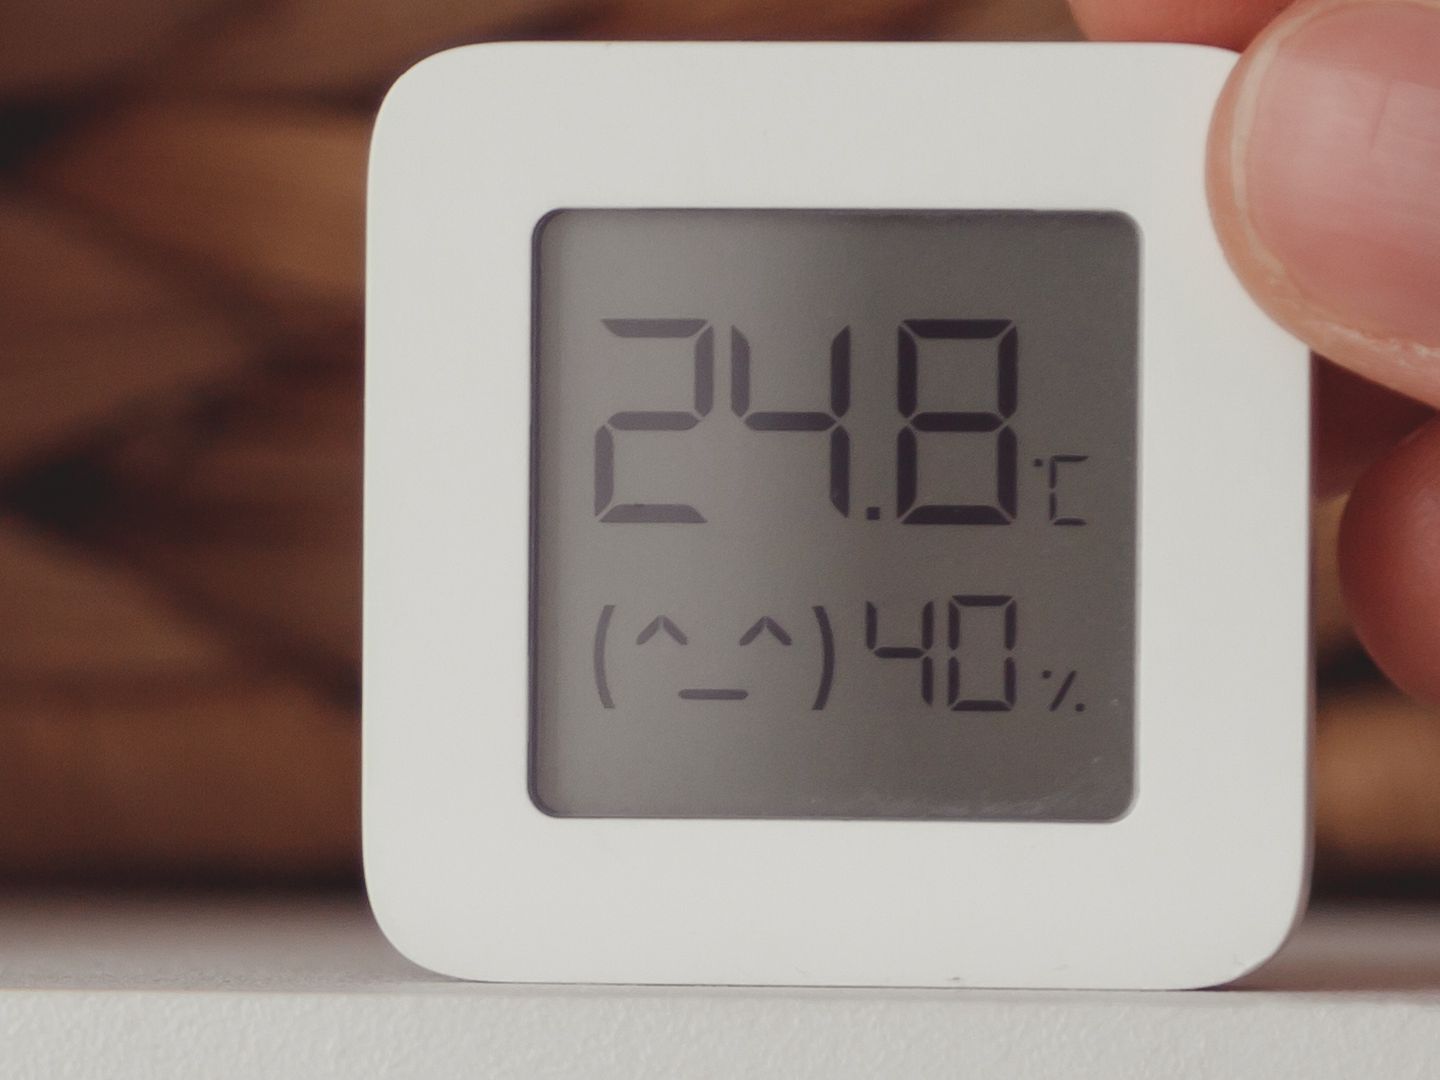 Darum zeigen Auto-Thermometer oft falsche Temperaturen 